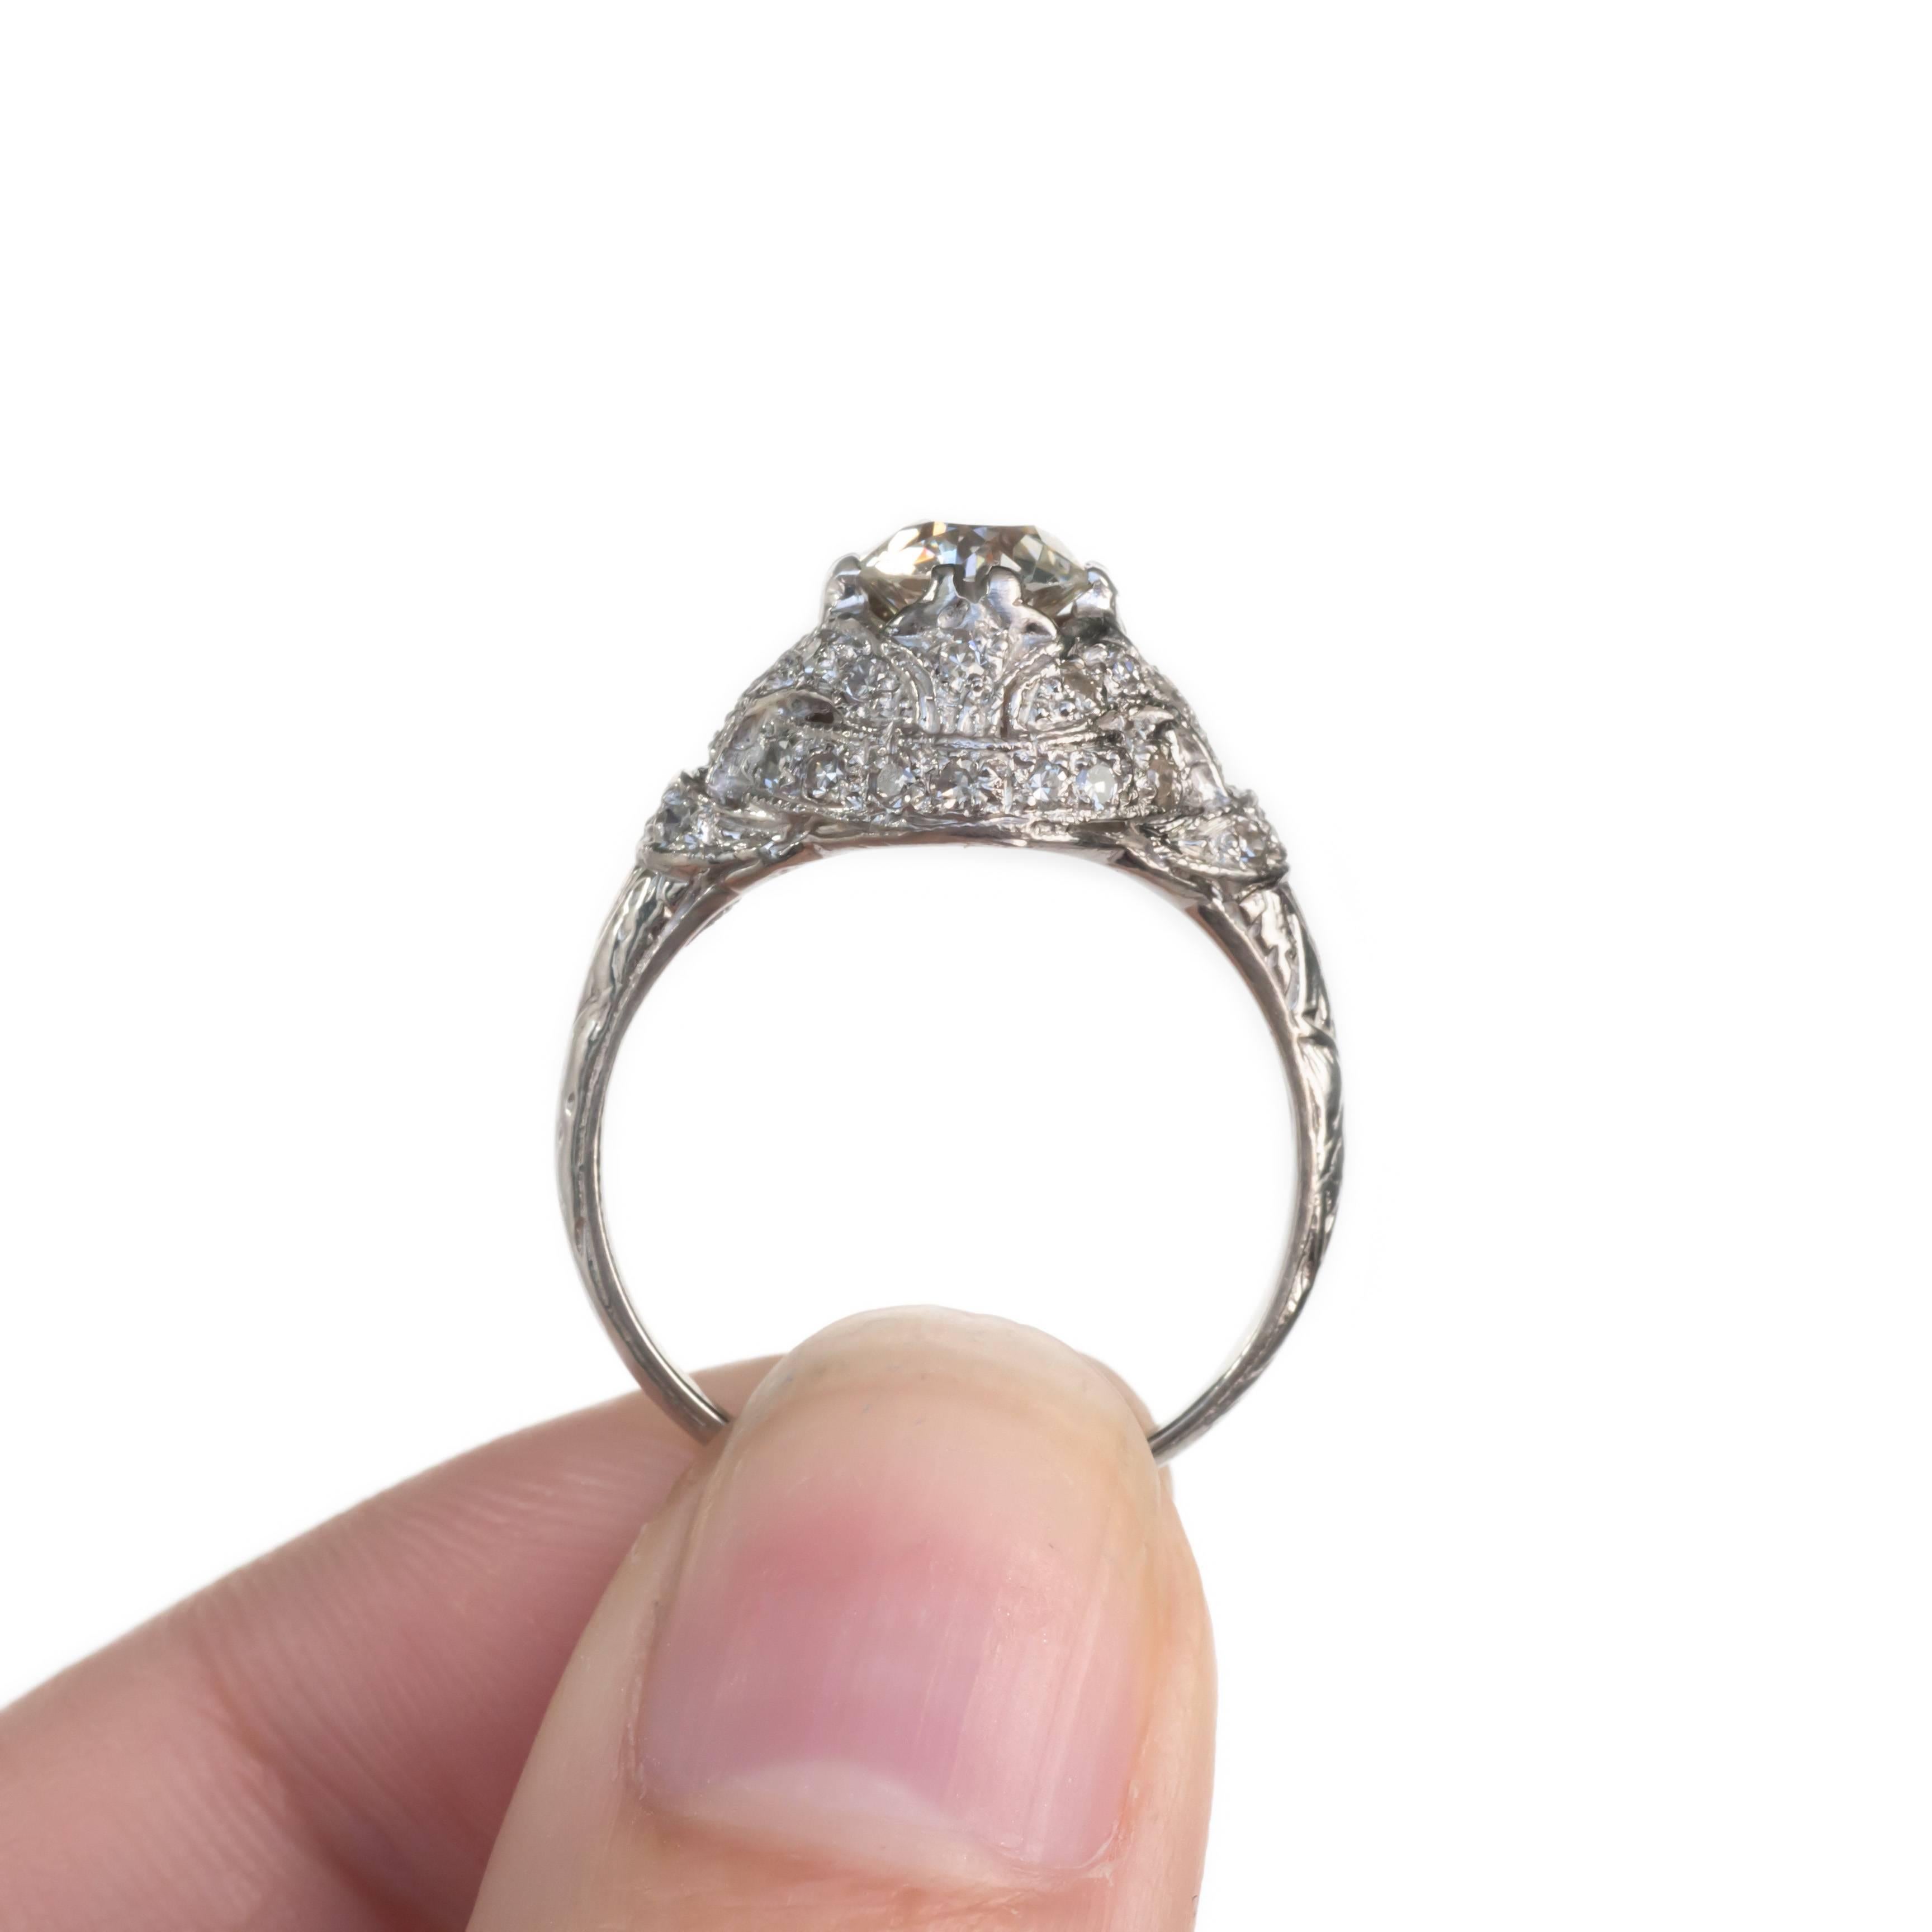 Edwardian GIA Certified 0.97 Carat Diamond Platinum Engagement Ring